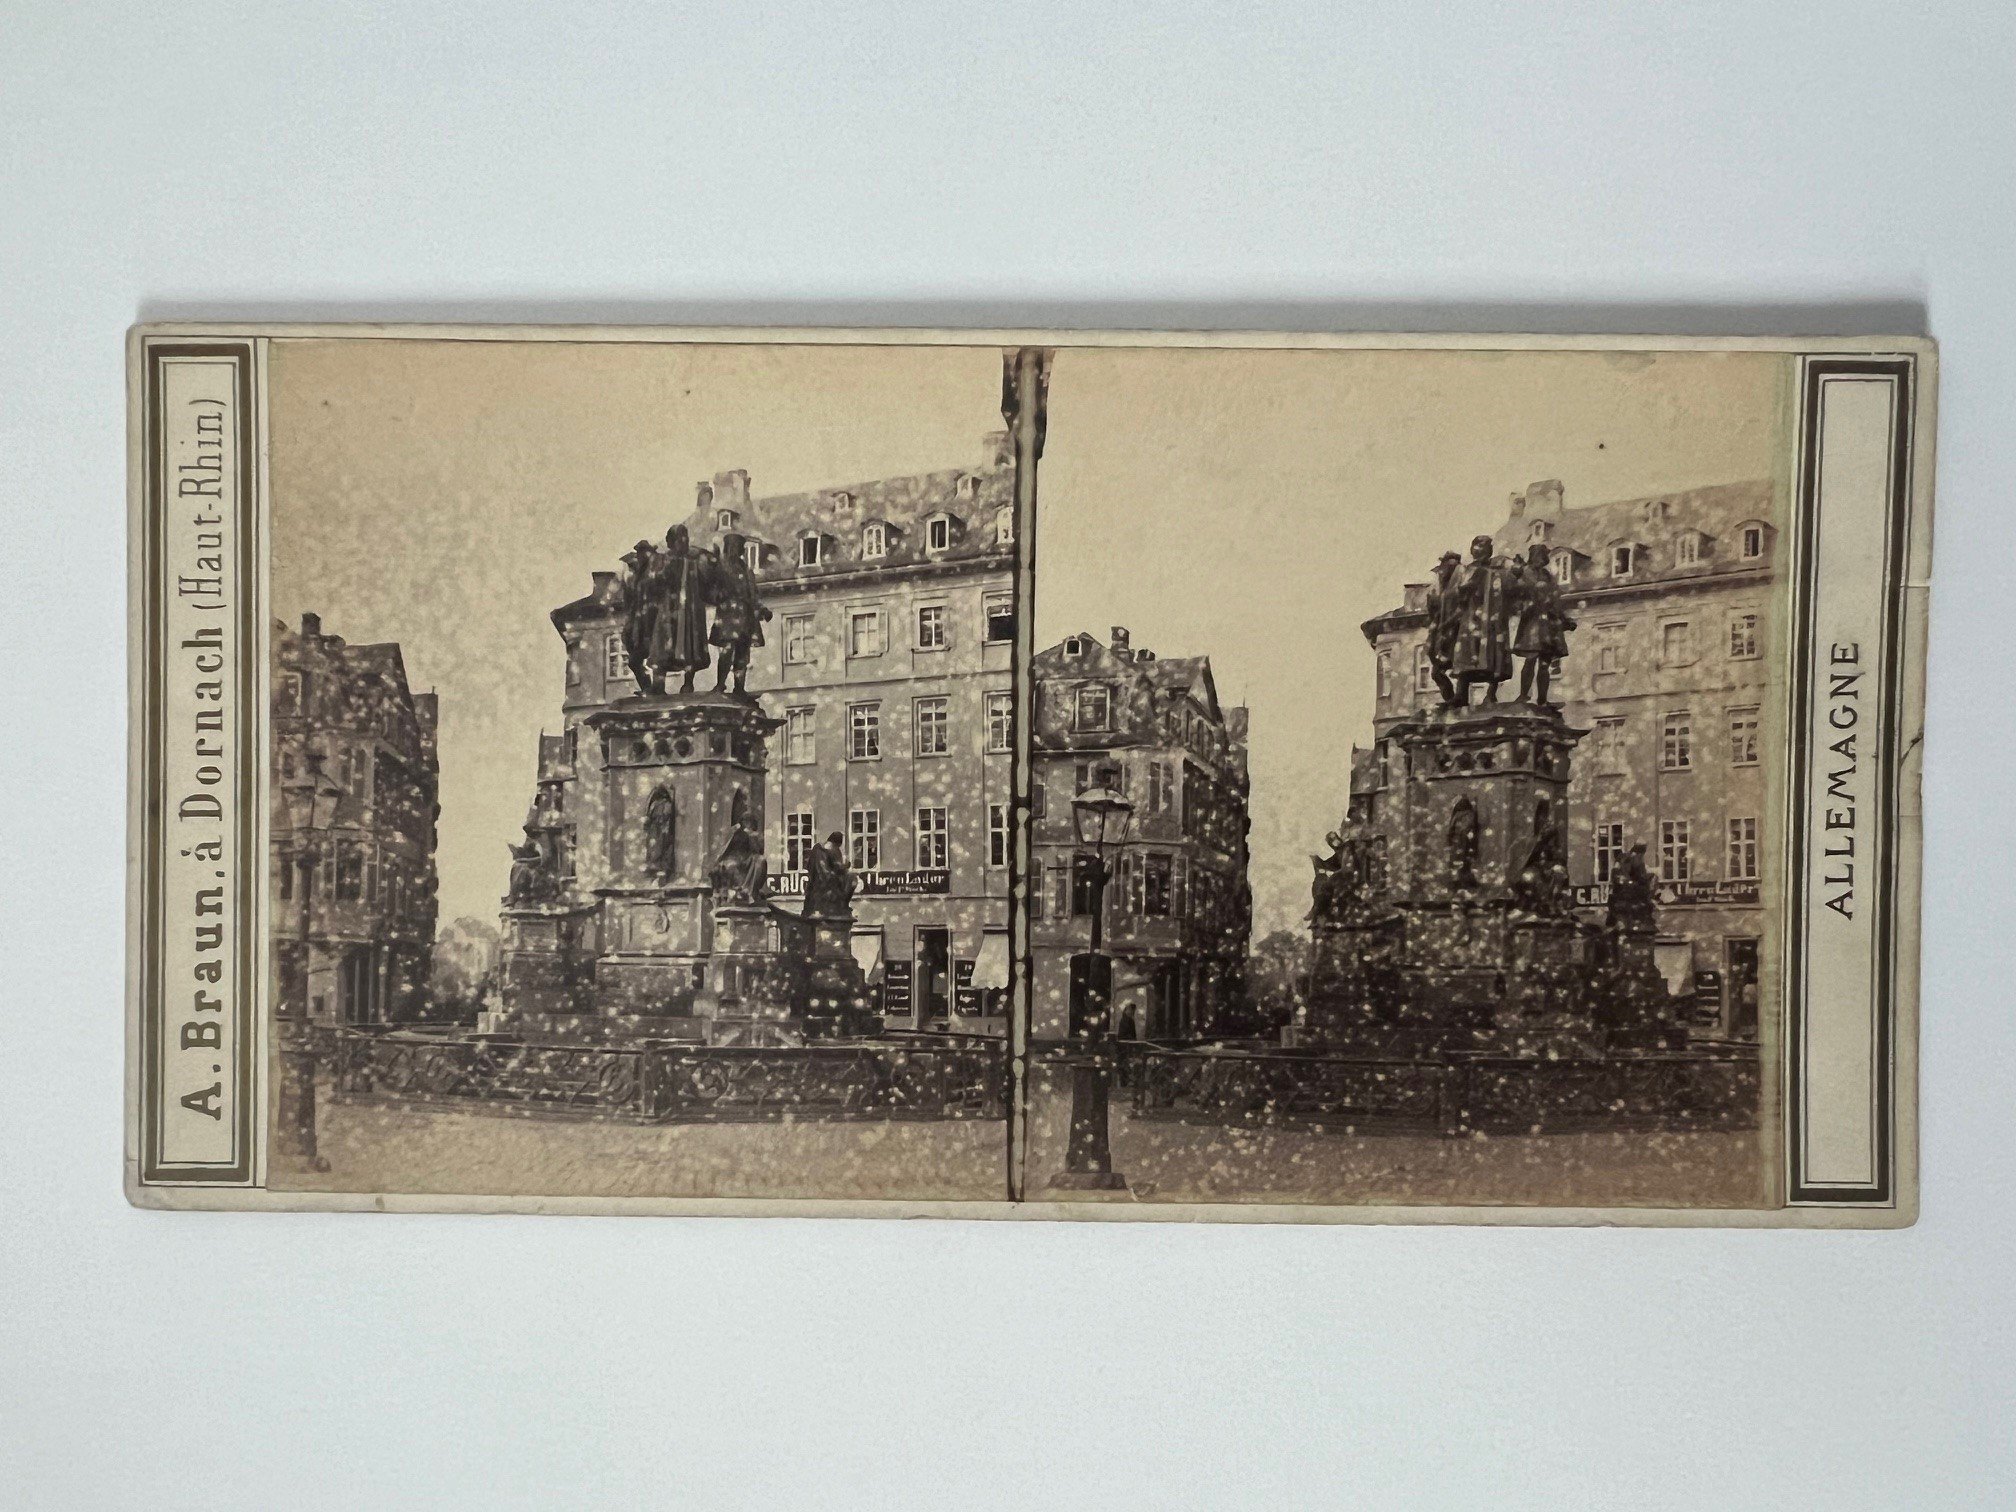 Stereobild, Adolphe Braun, Frankfurt, Nr. 2450, Das Gutenberg-Denkmal, ca. 1865. (Taunus-Rhein-Main - Regionalgeschichtliche Sammlung Dr. Stefan Naas CC BY-NC-SA)